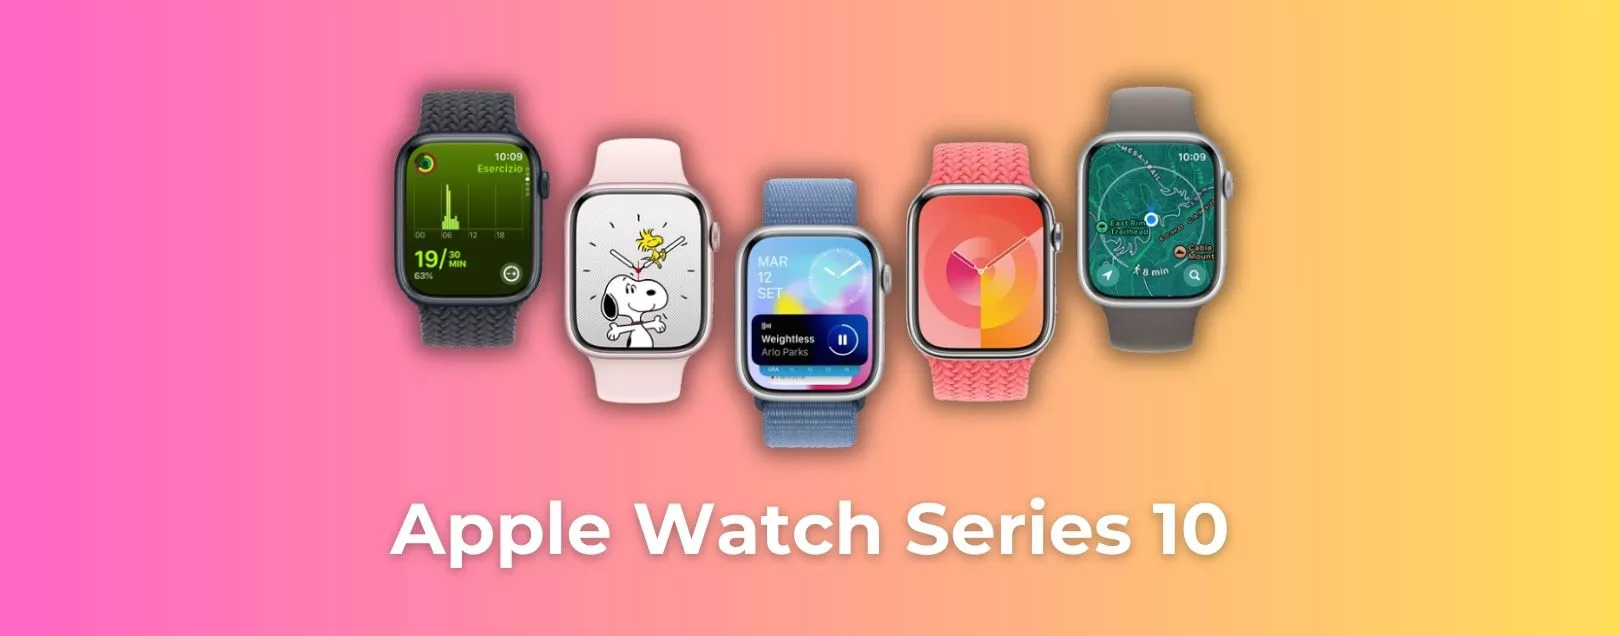 Apple Watch Series 10 potrebbe rilevare l'ipertensione e le apnee notturne